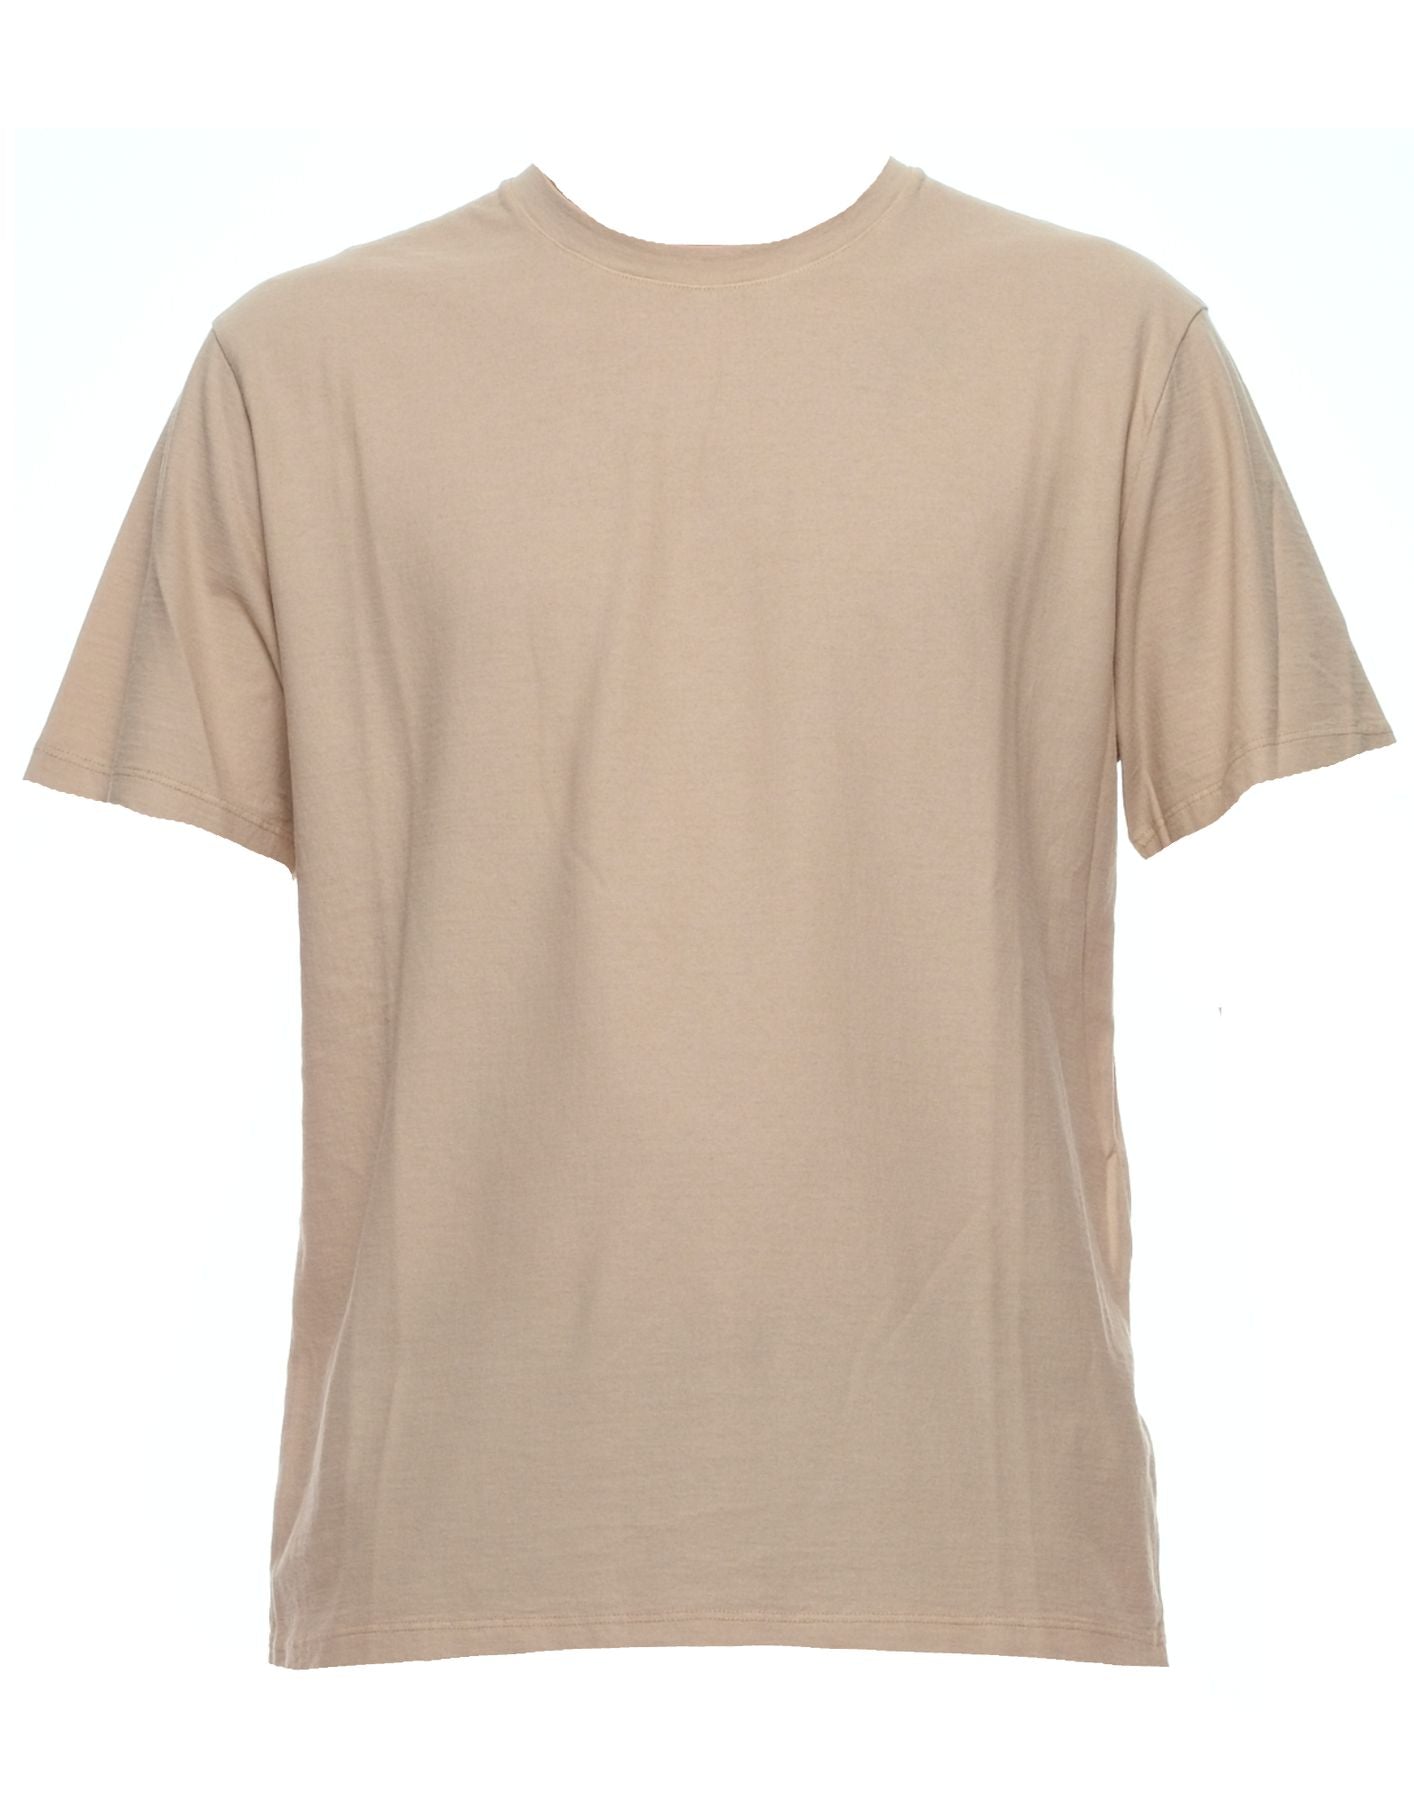 Camiseta para el hombre PE24afu61 beige Atomofactory